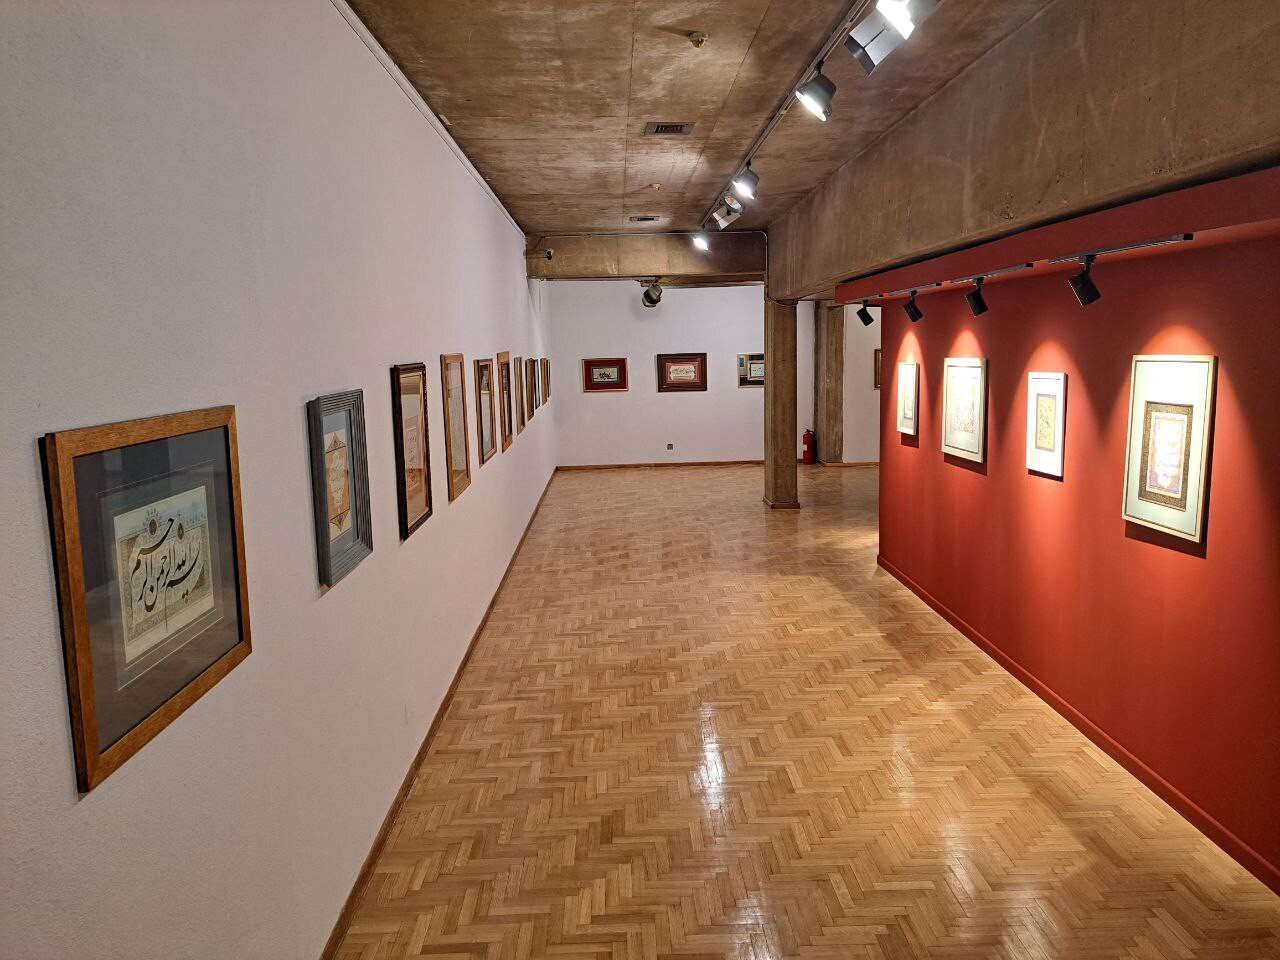 نمایشگاه تخصصی هنرهای قرآنی، «روایت باران» در فرهنگسرای نیاوران گشایش یافت